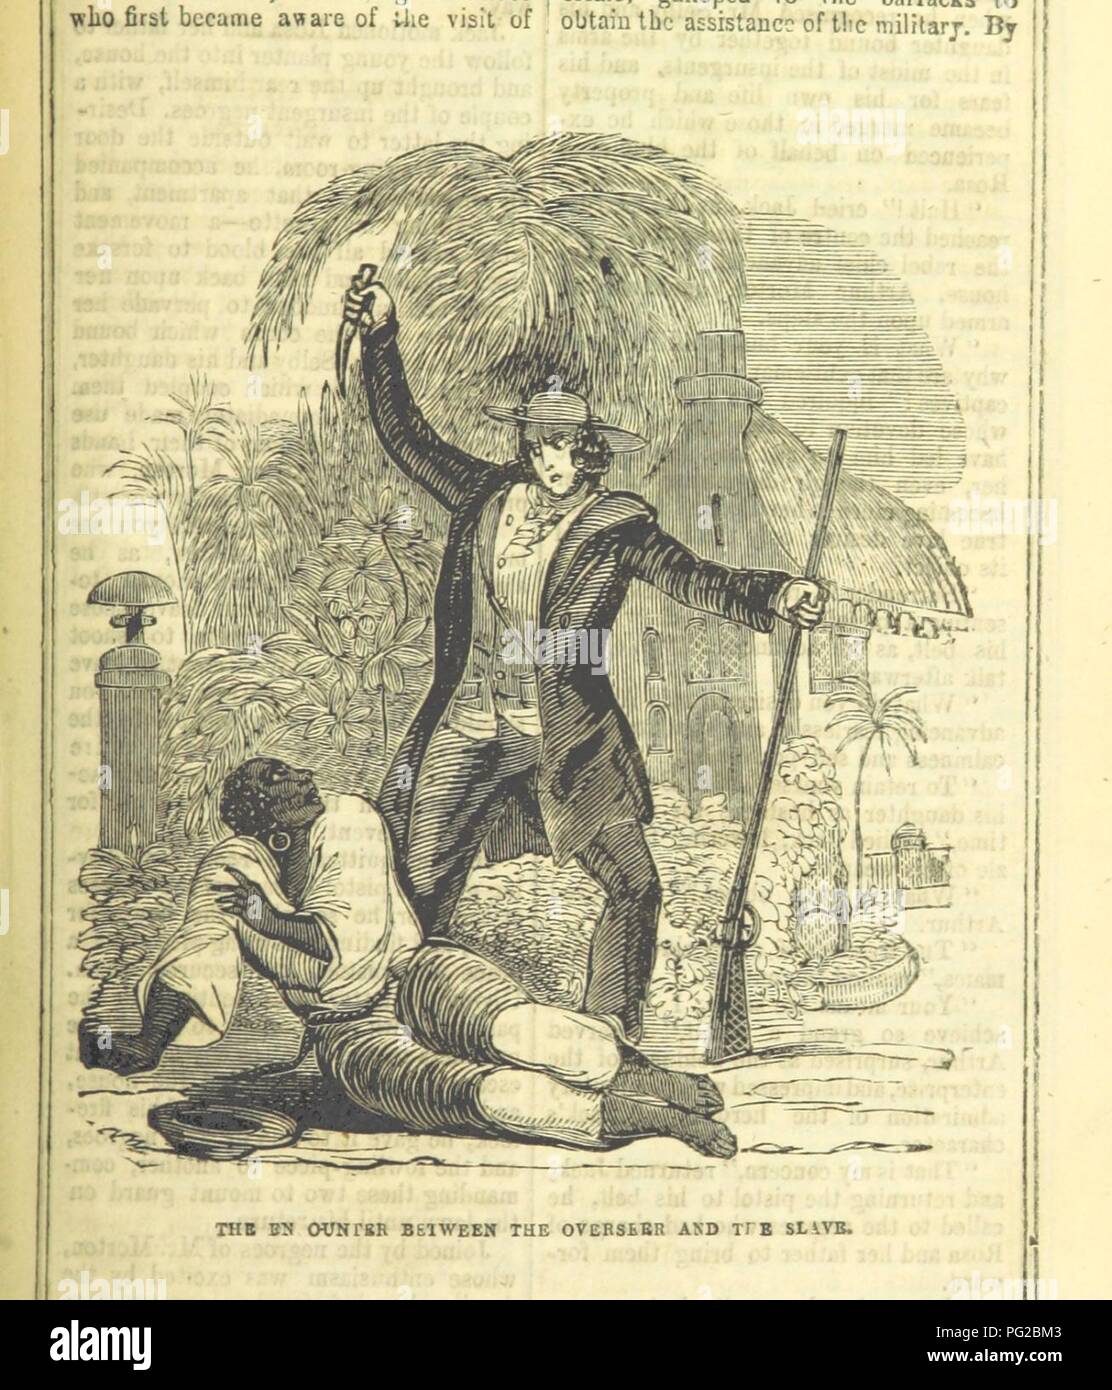 Bild von Seite 147 von "Obi; oder, Drei-fingered Jack; eine Romanze". Stockfoto